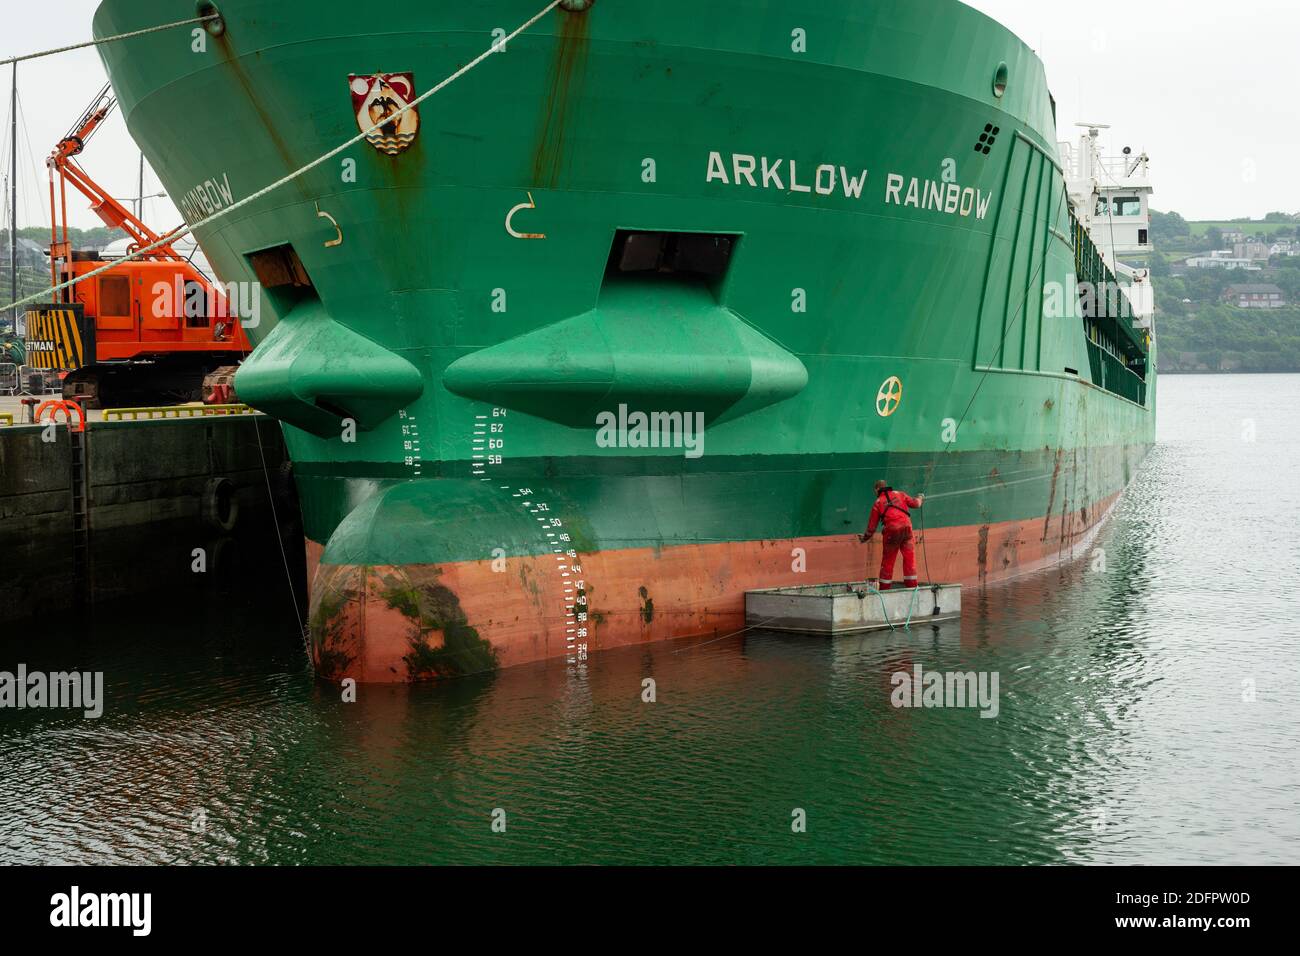 Le navire de cargaison Arklow Rainbow est peint en vert par un dyer mâle ou un peintre peint avec une petite brosse dans le port de Kinsale, en Irlande Banque D'Images